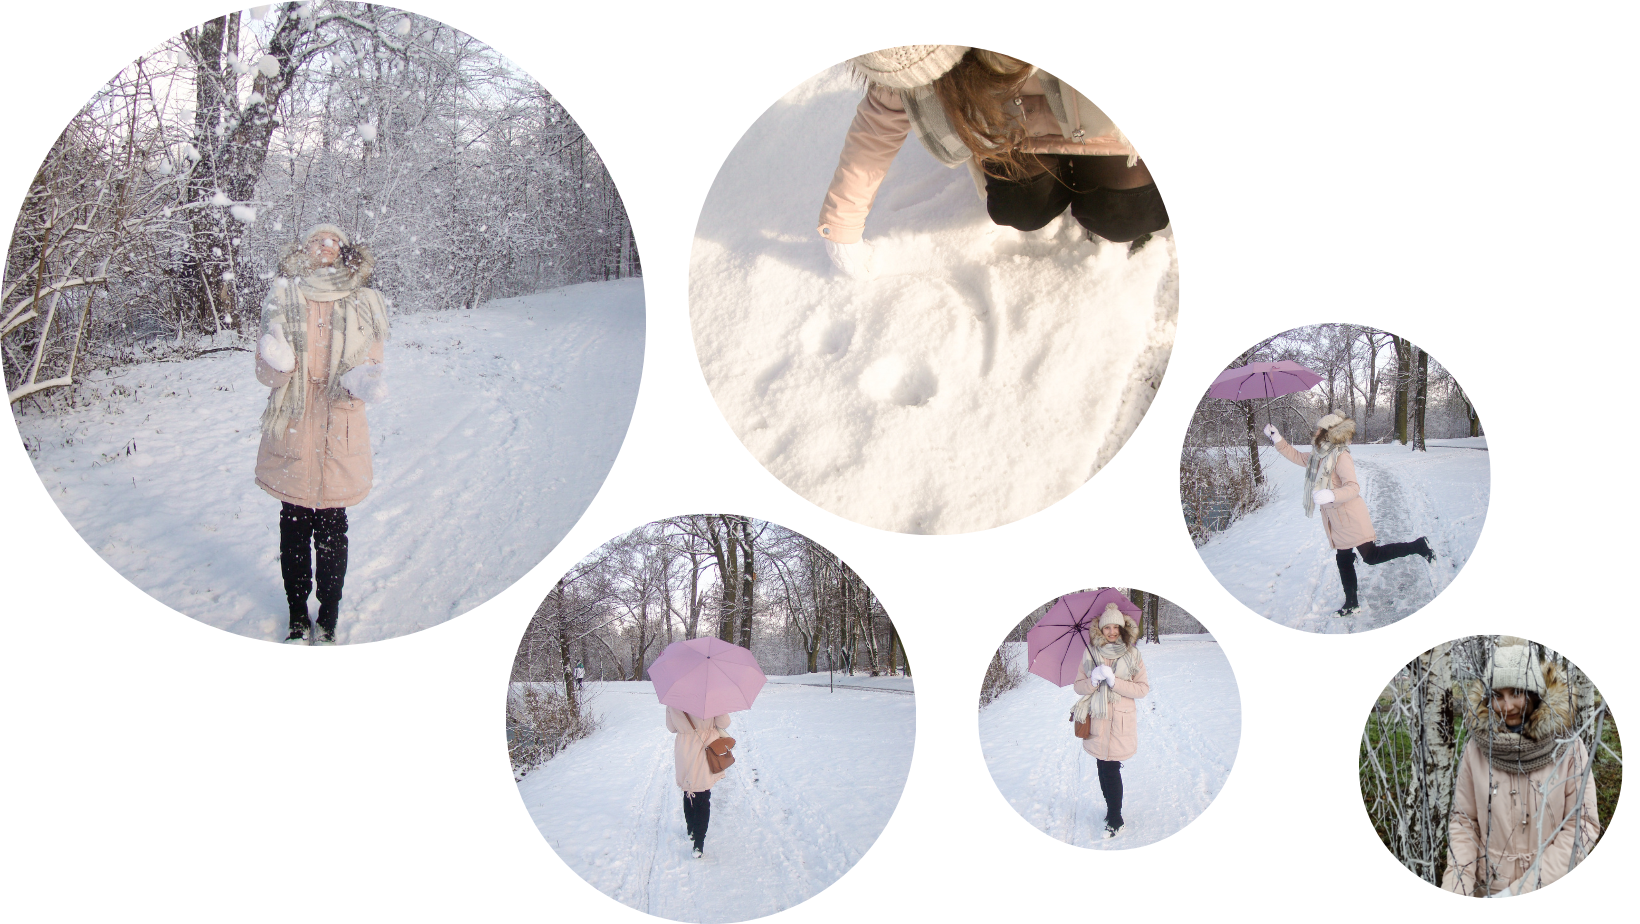 Zimowe zdjęcia na śniegu - kreatywne inspiracje z parasolką i śniegiem.